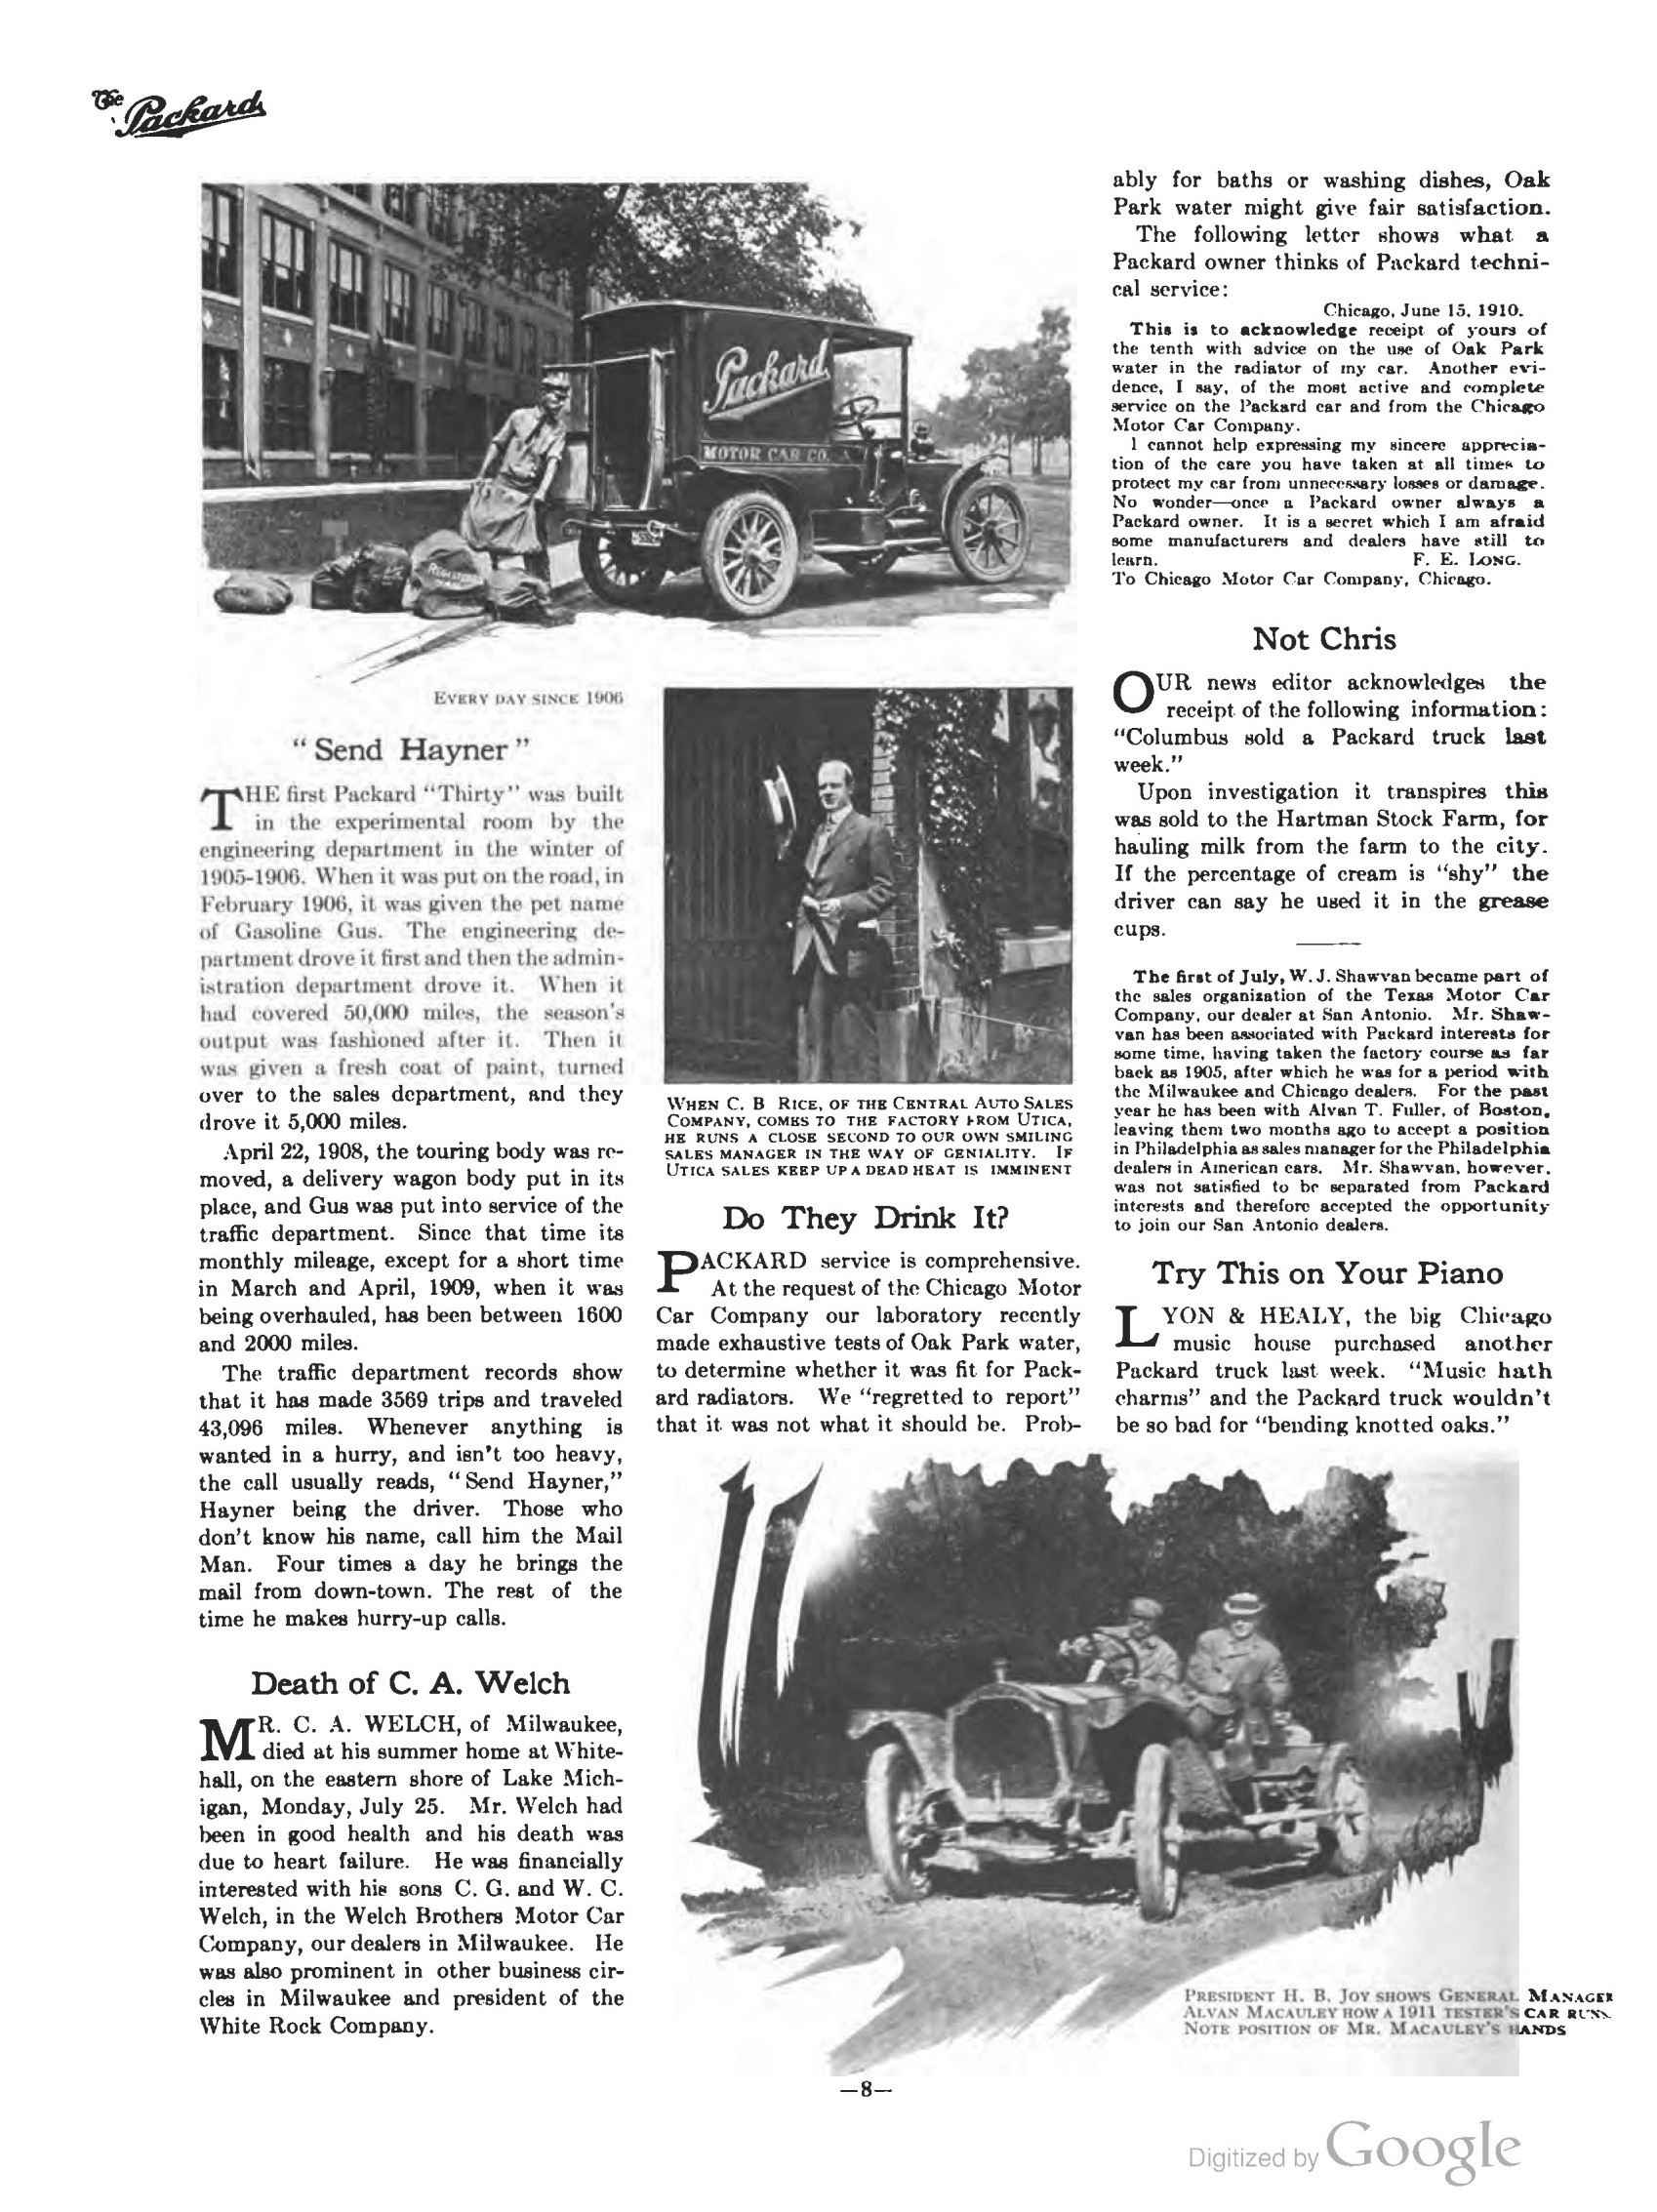 1910_The_Packard_Newsletter-106